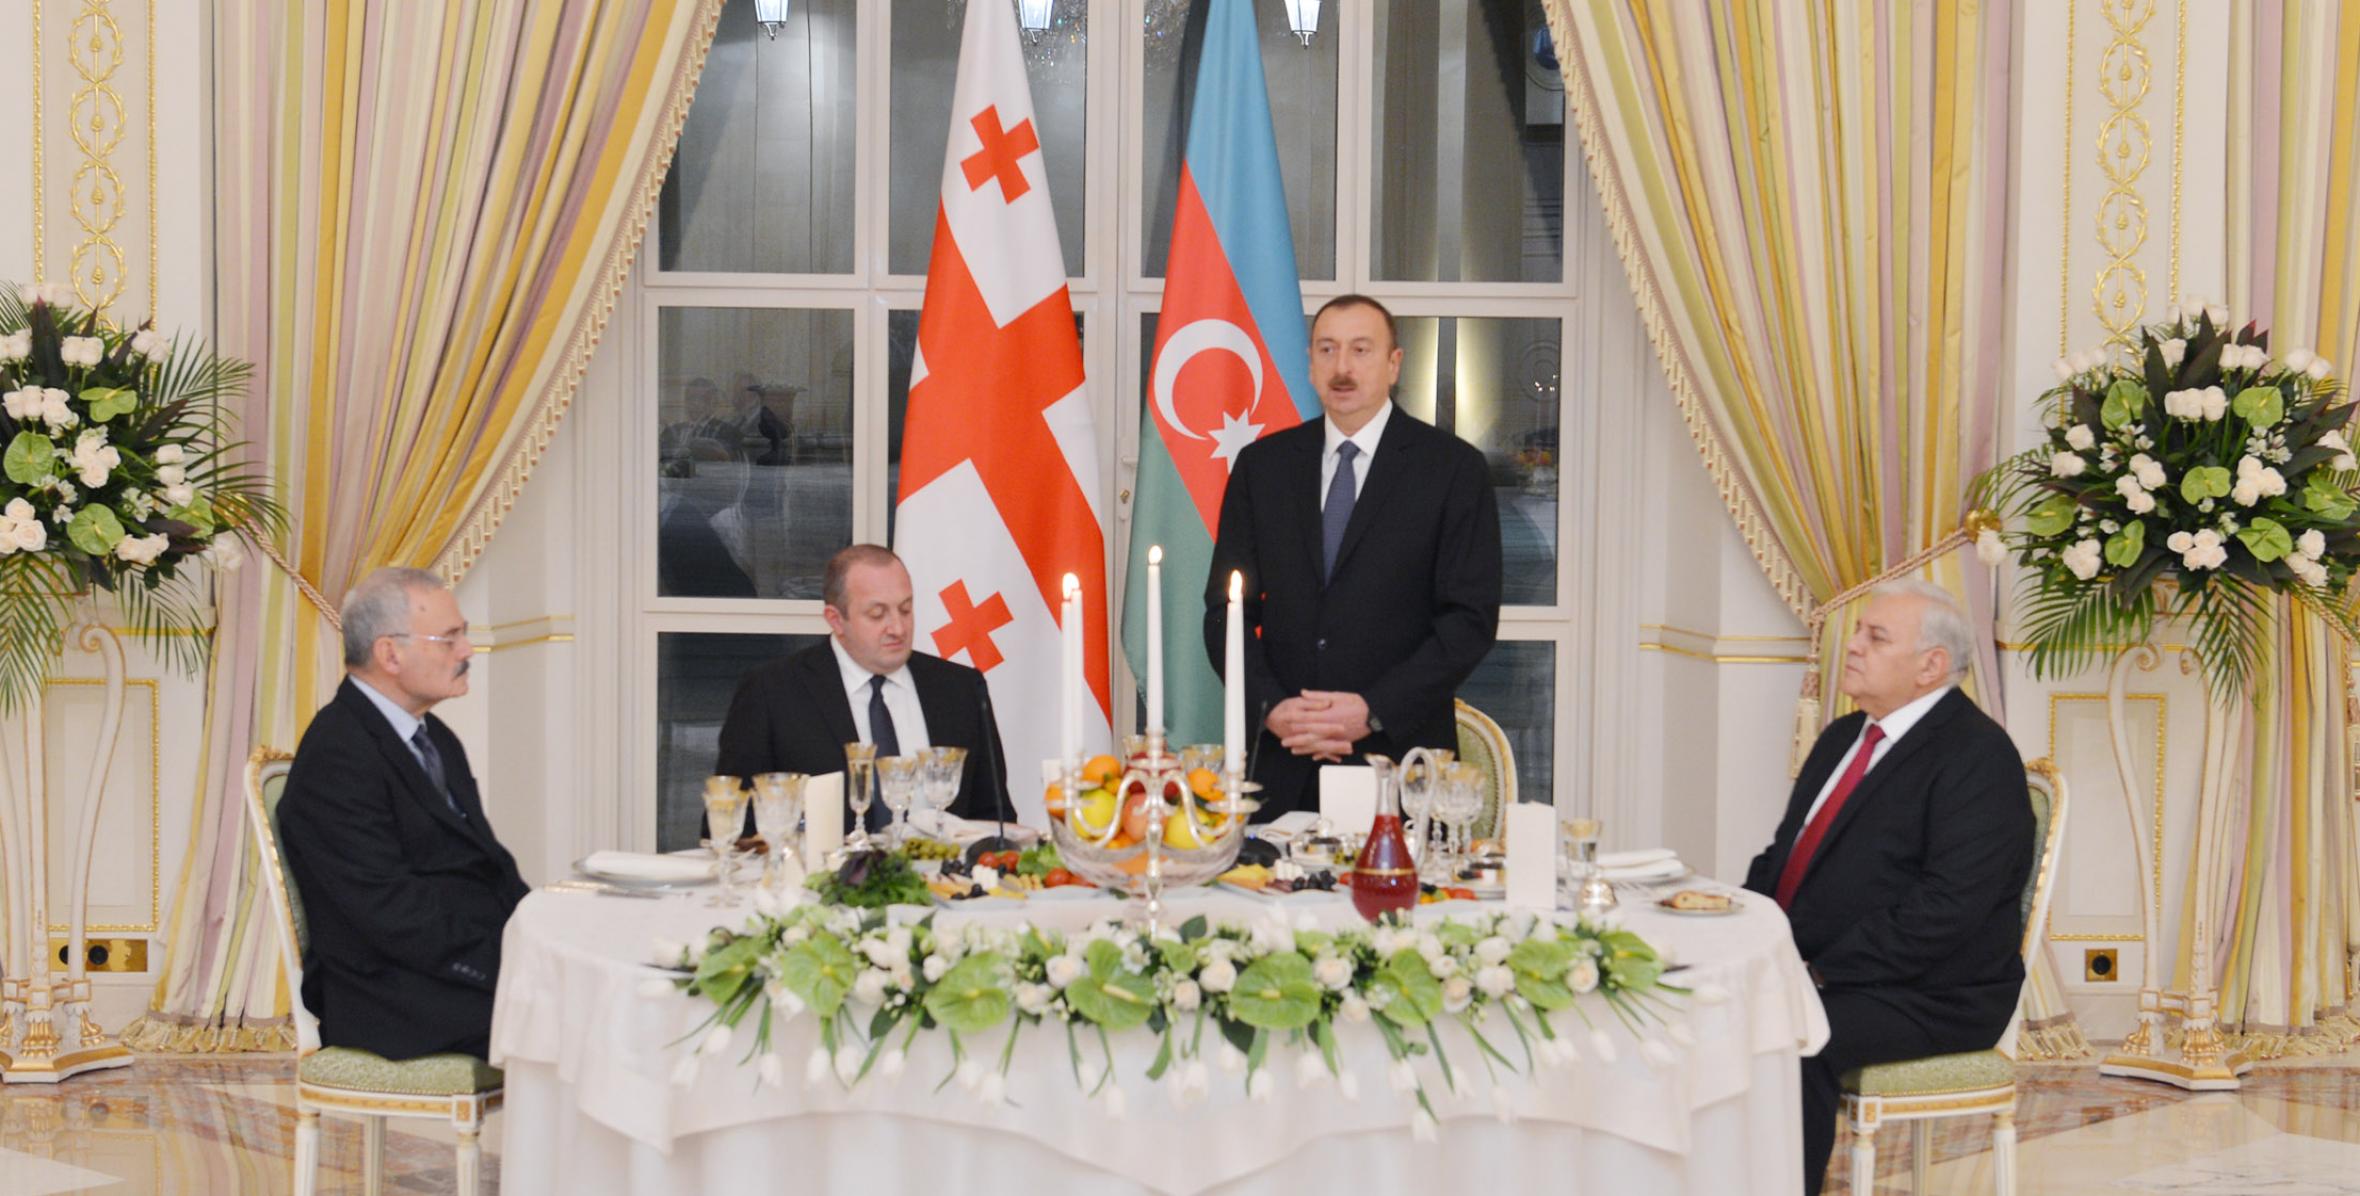 От имени Ильхама Алиева был устроен официальный прием в честь Президента Грузии Георгия Маргвелашвили